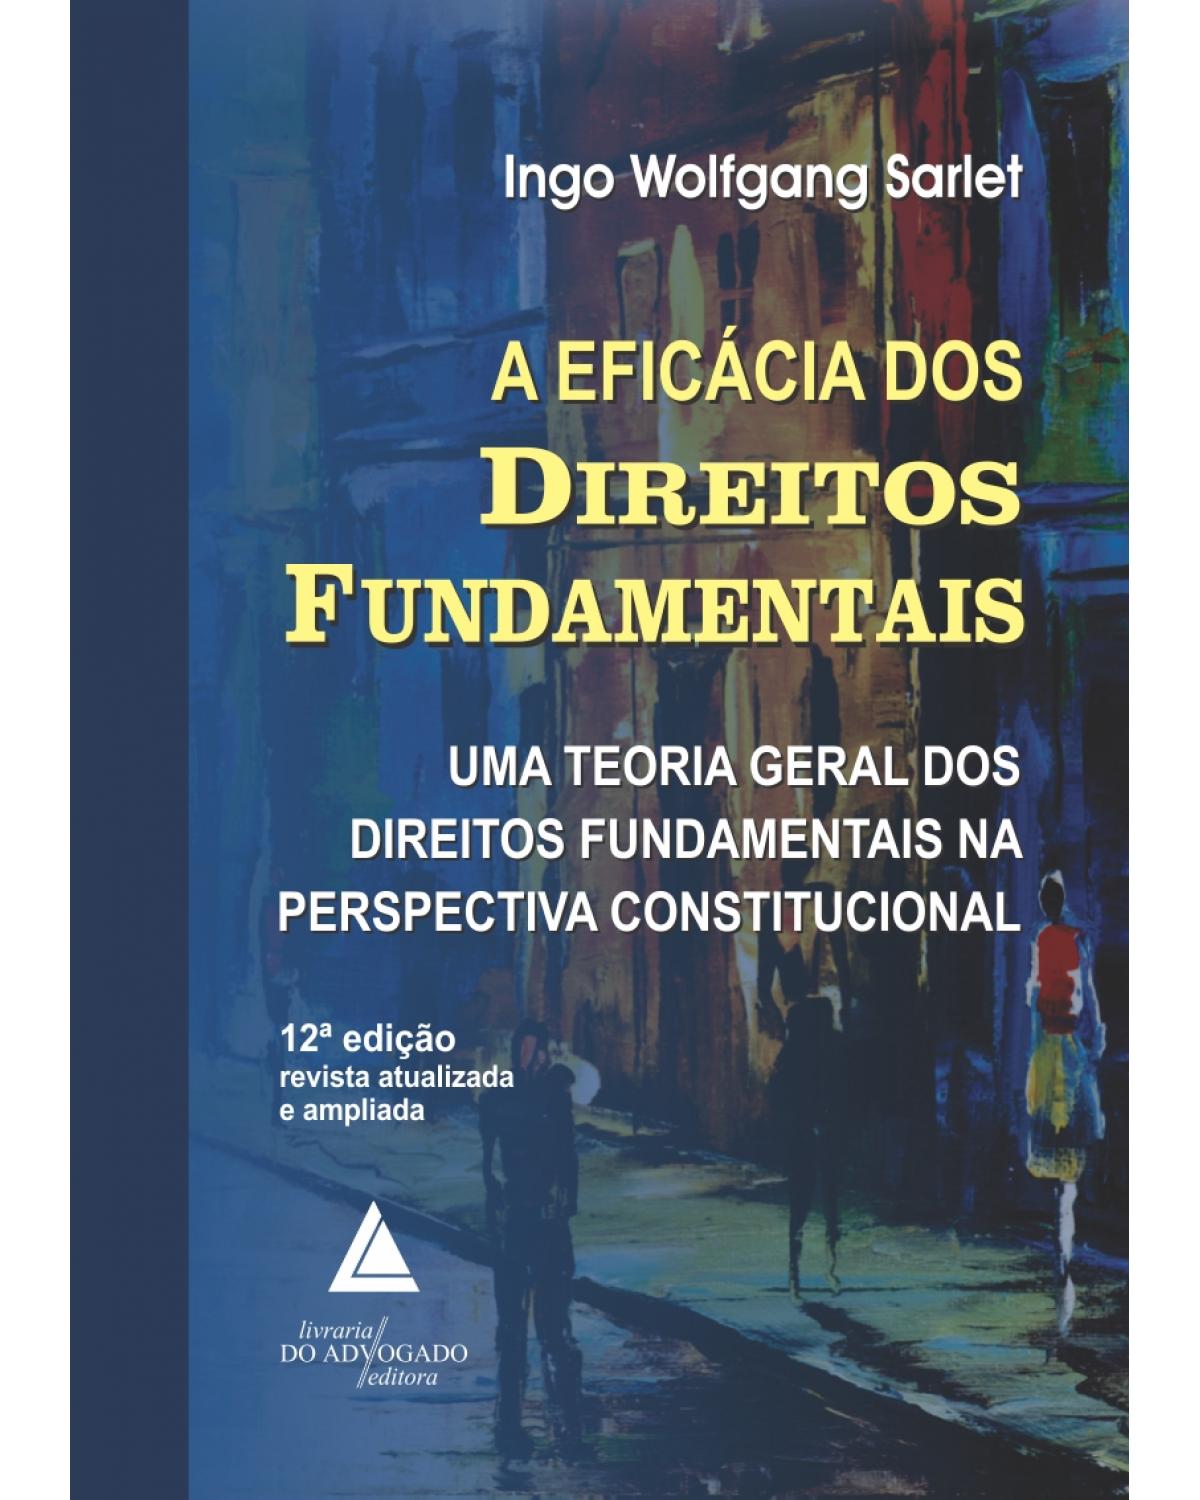 A eficácia dos direitos fundamentais: Uma teoria geral dos direitos fundamentais na perspectiva constitucional - 12ª Edição | 2015